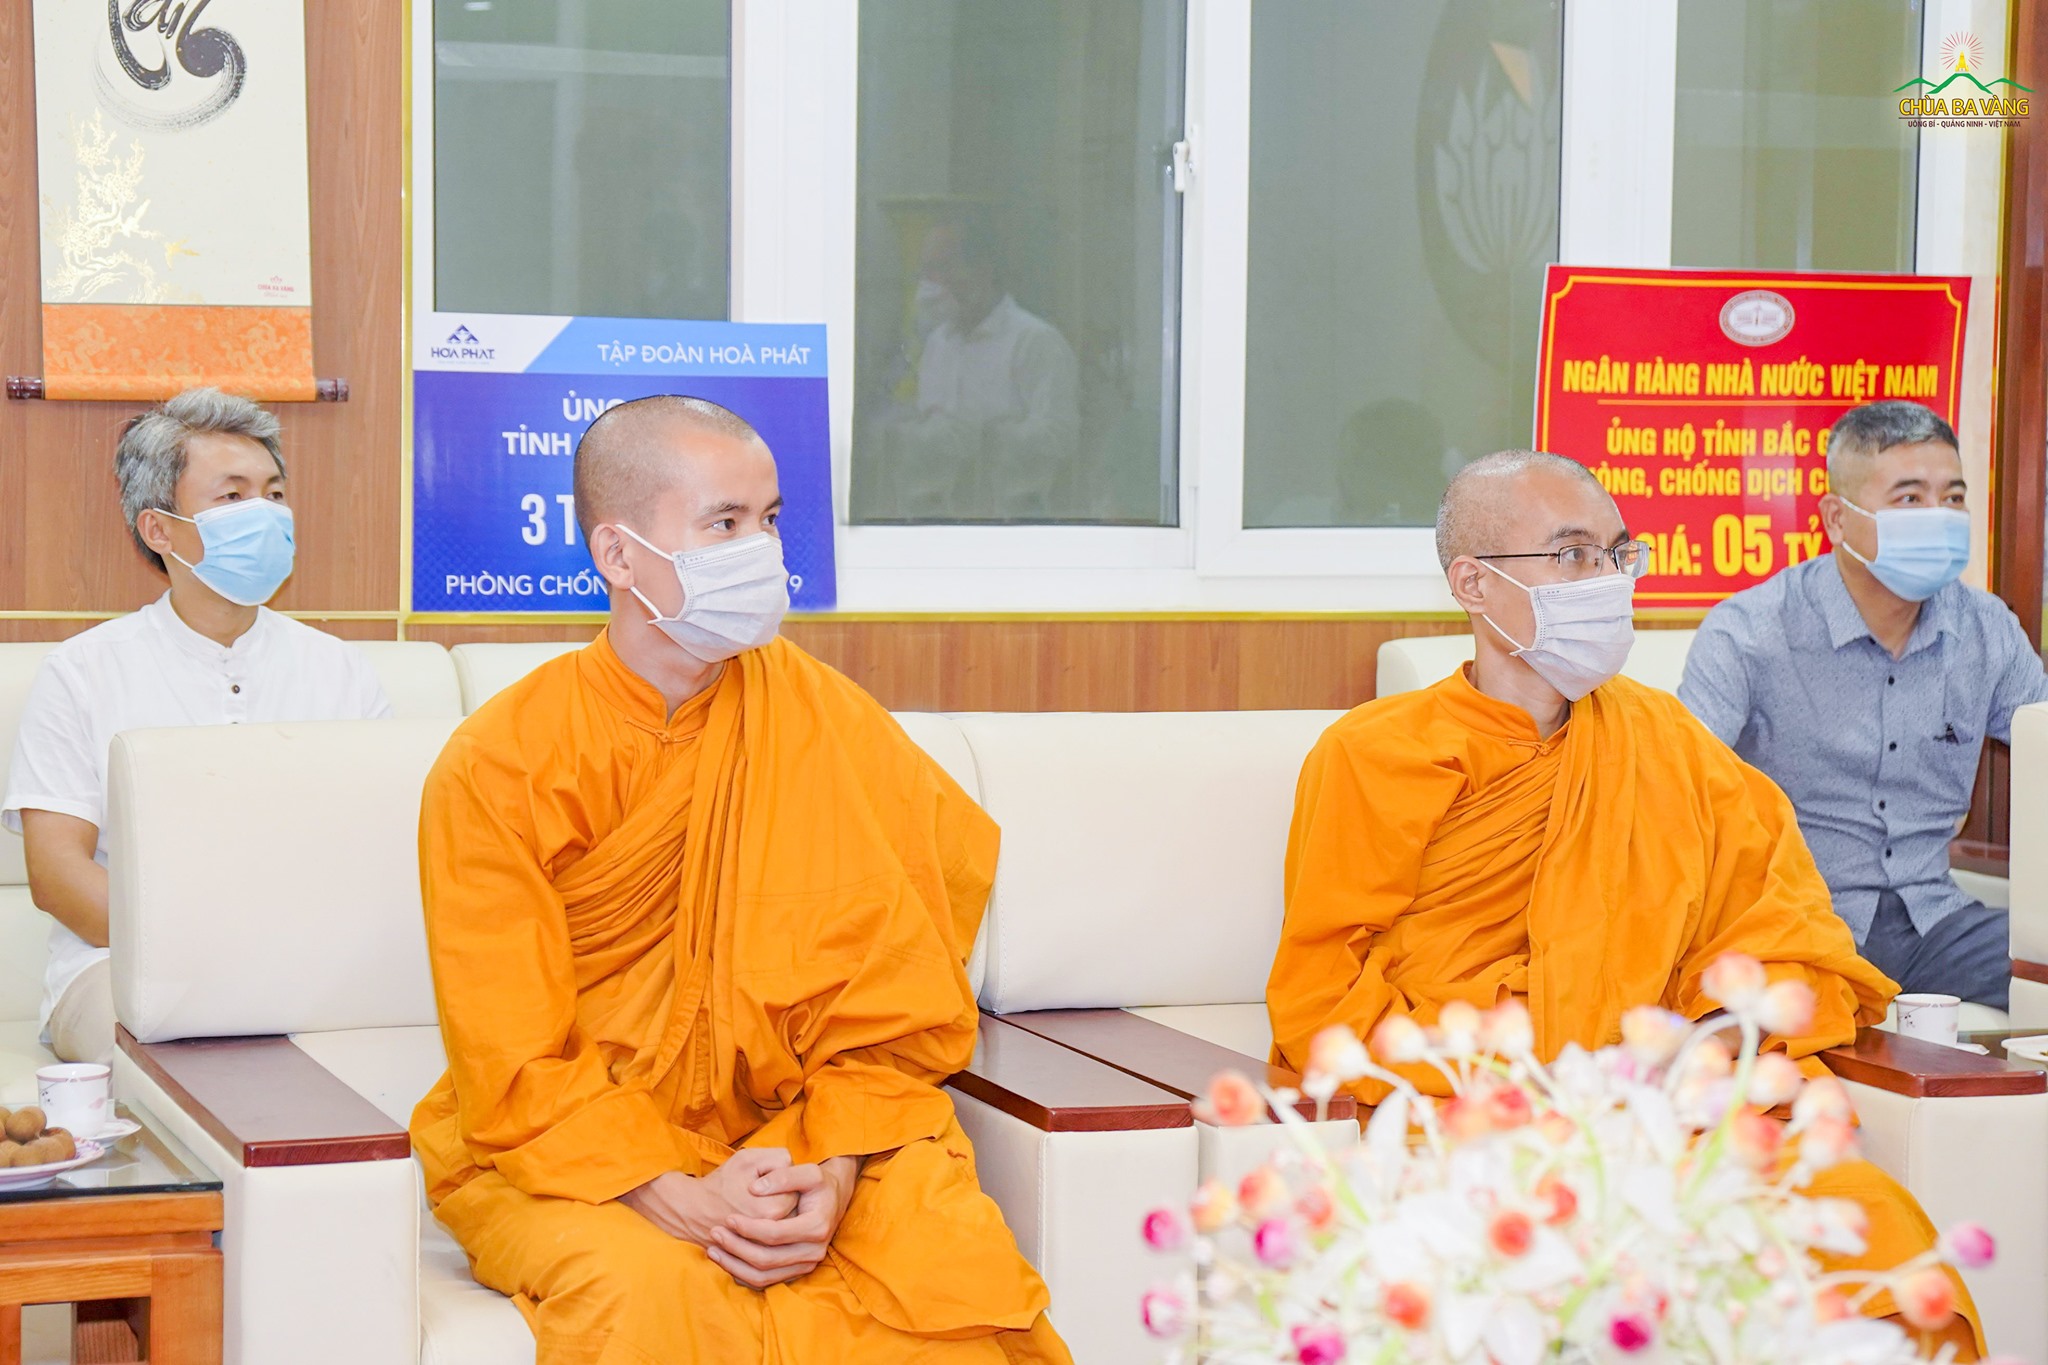 Chư Tăng chùa Ba Vàng tại buổi trao tặng bằng khen của Chủ tịch UBND tỉnh Bắc Giang